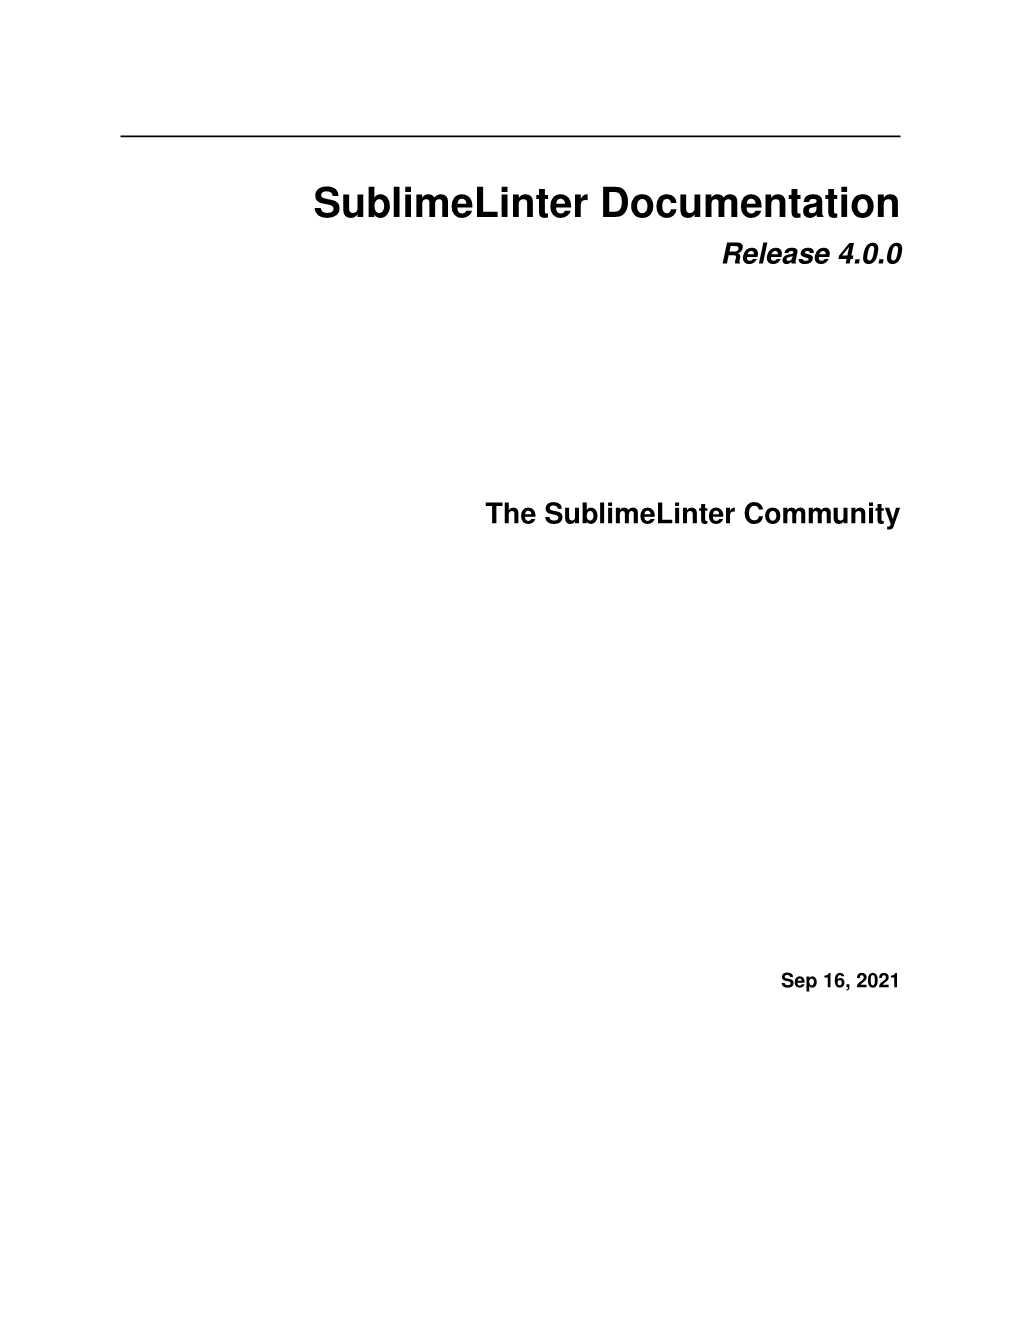 Sublimelinter Documentation Release 4.0.0